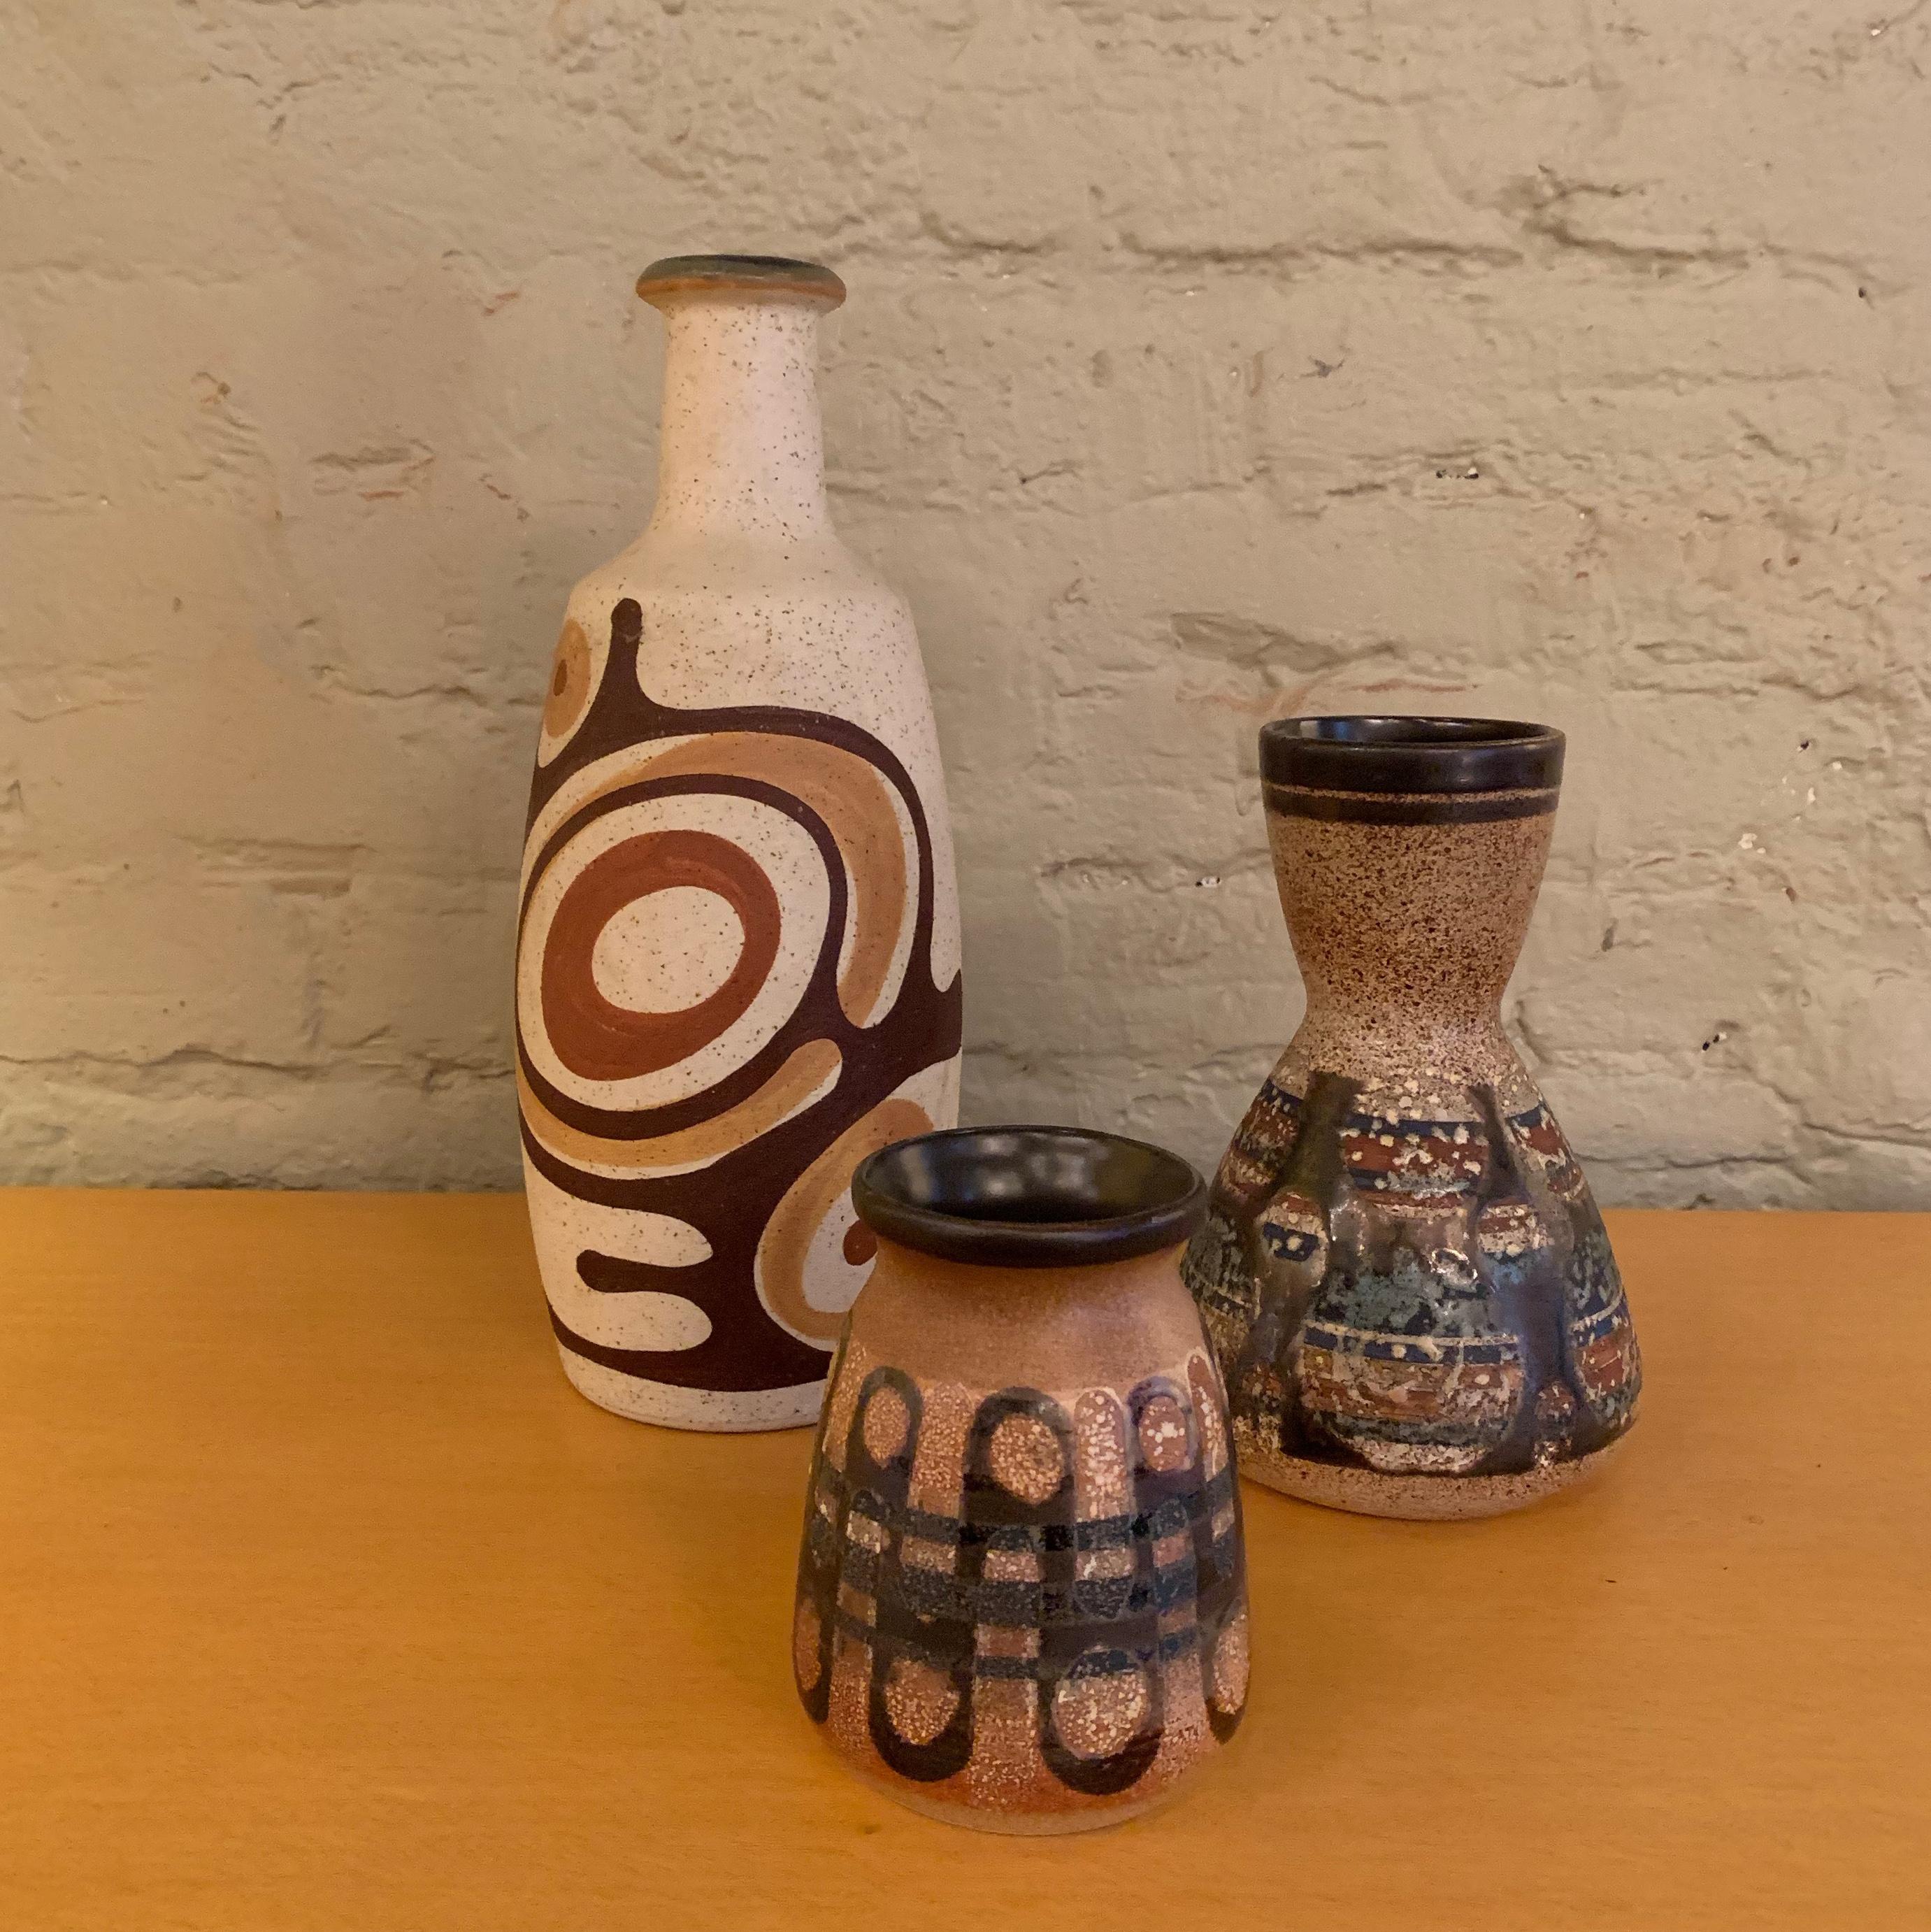 Israeli Mid-Century Modern Art Pottery Vase by Lapid, Israel